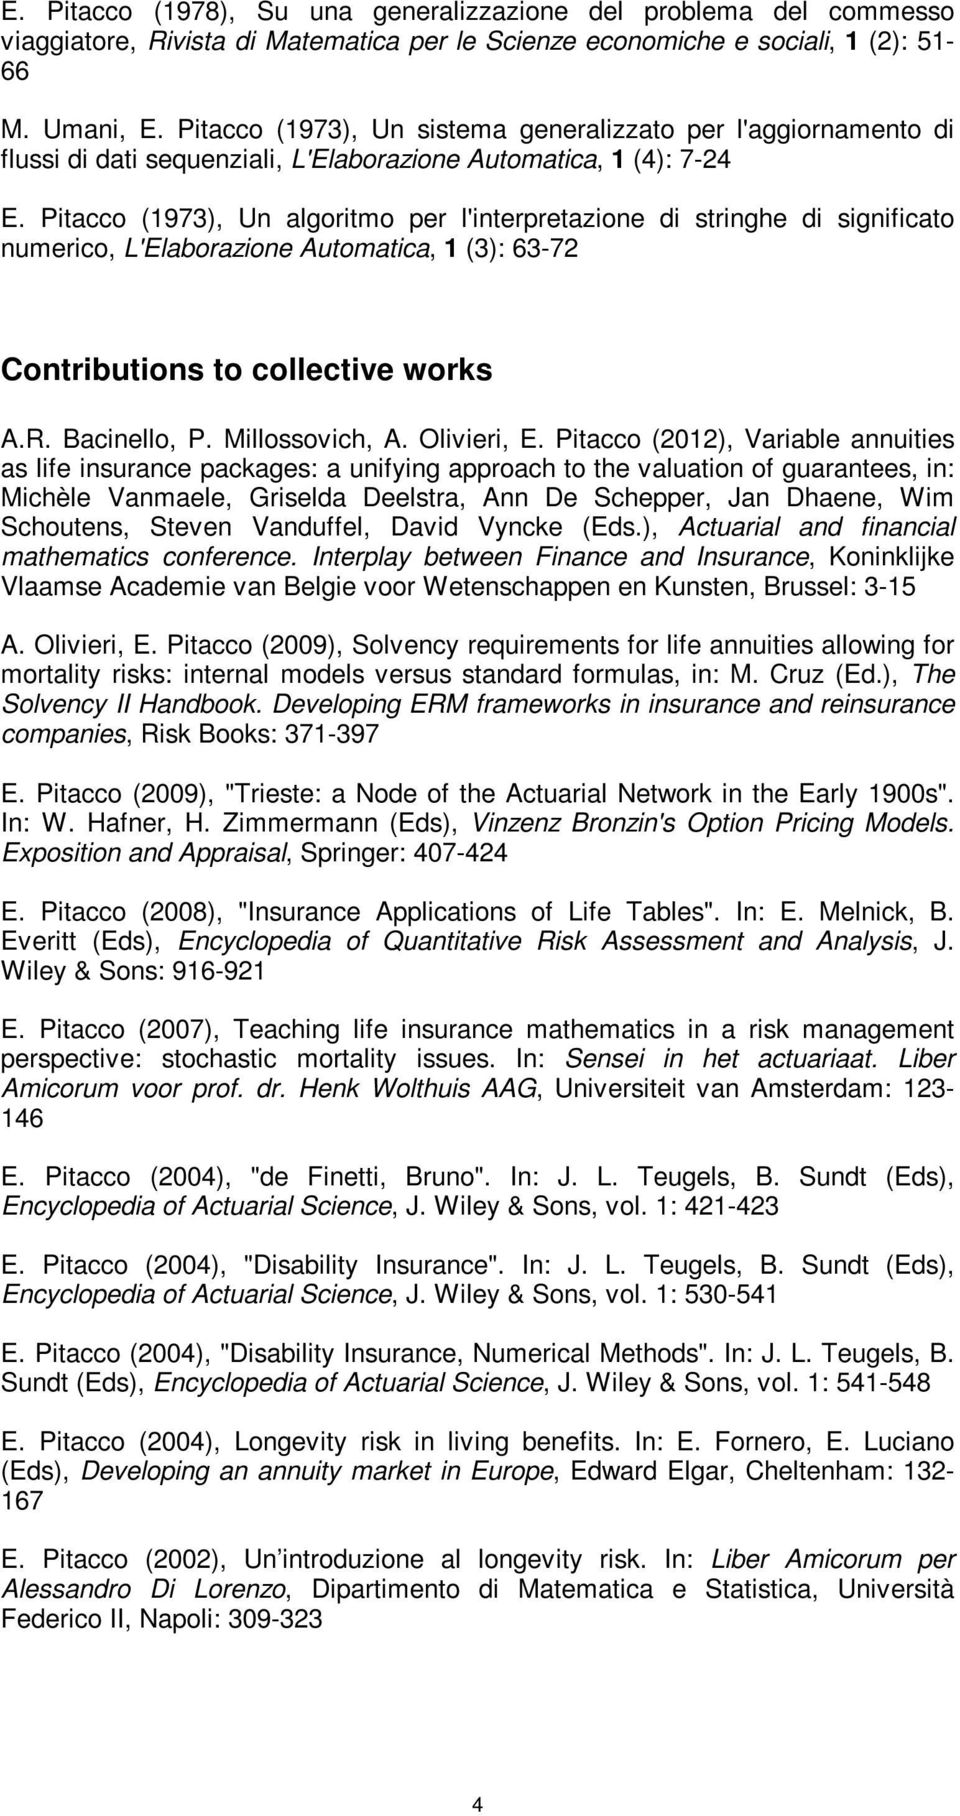 Pitacco (1973), Un algoritmo per l'interpretazione di stringhe di significato numerico, L'Elaborazione Automatica, 1 (3): 63-72 Contributions to collective works A.R. Bacinello, P. Millossovich, A.